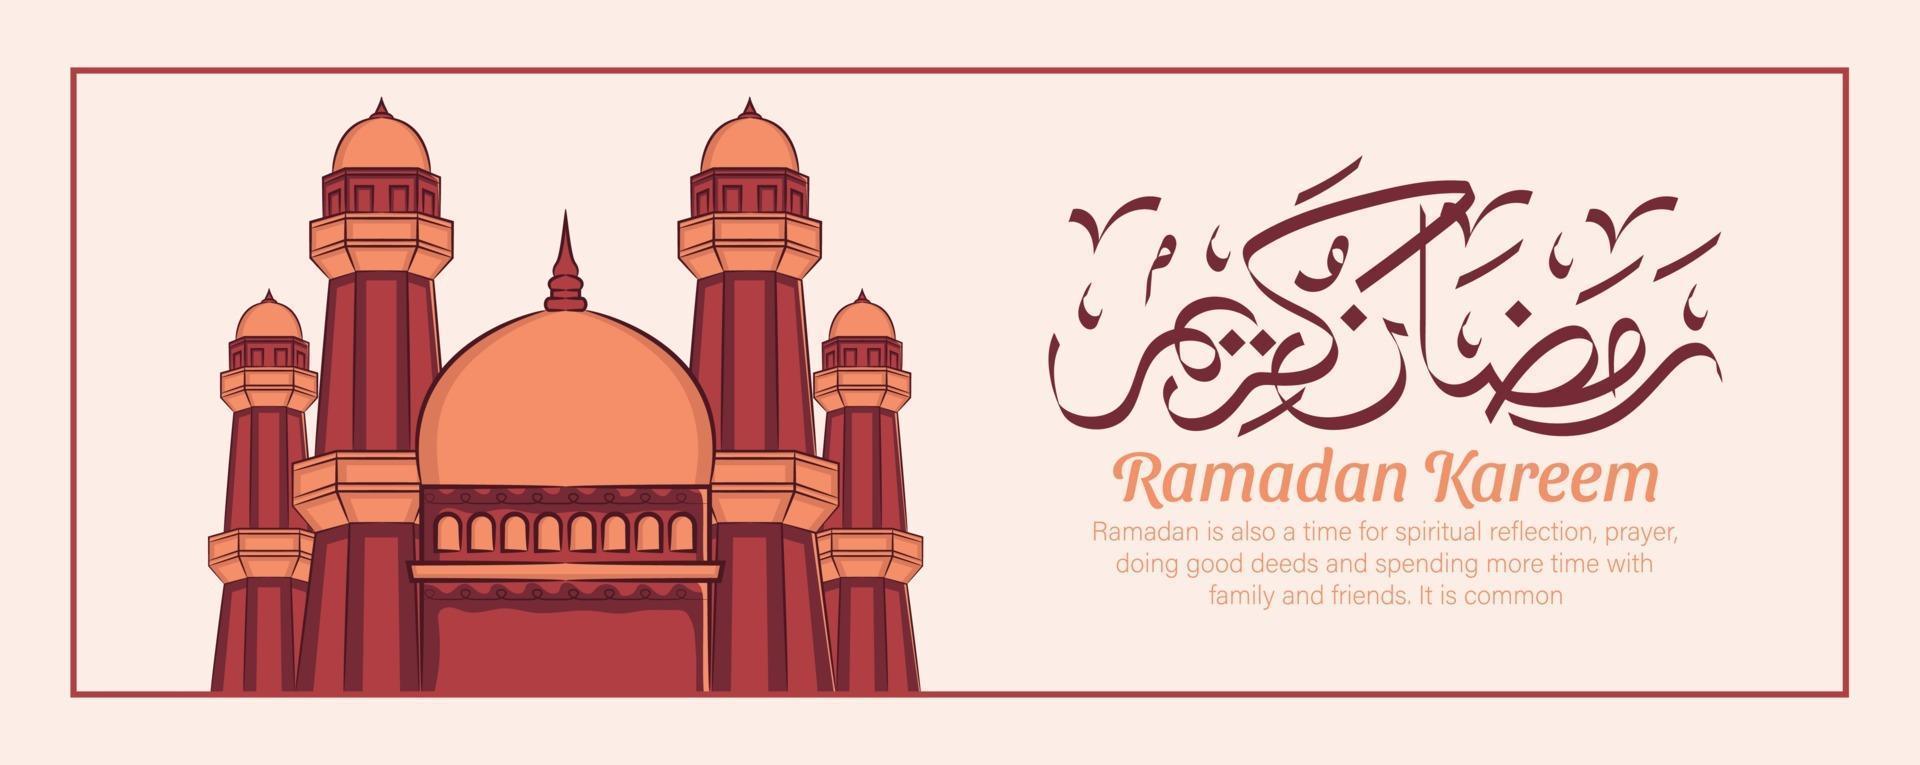 hand getrokken illustratie van ramadan kareem iftar feestviering. islamitische heilige maand 1442 h. vector